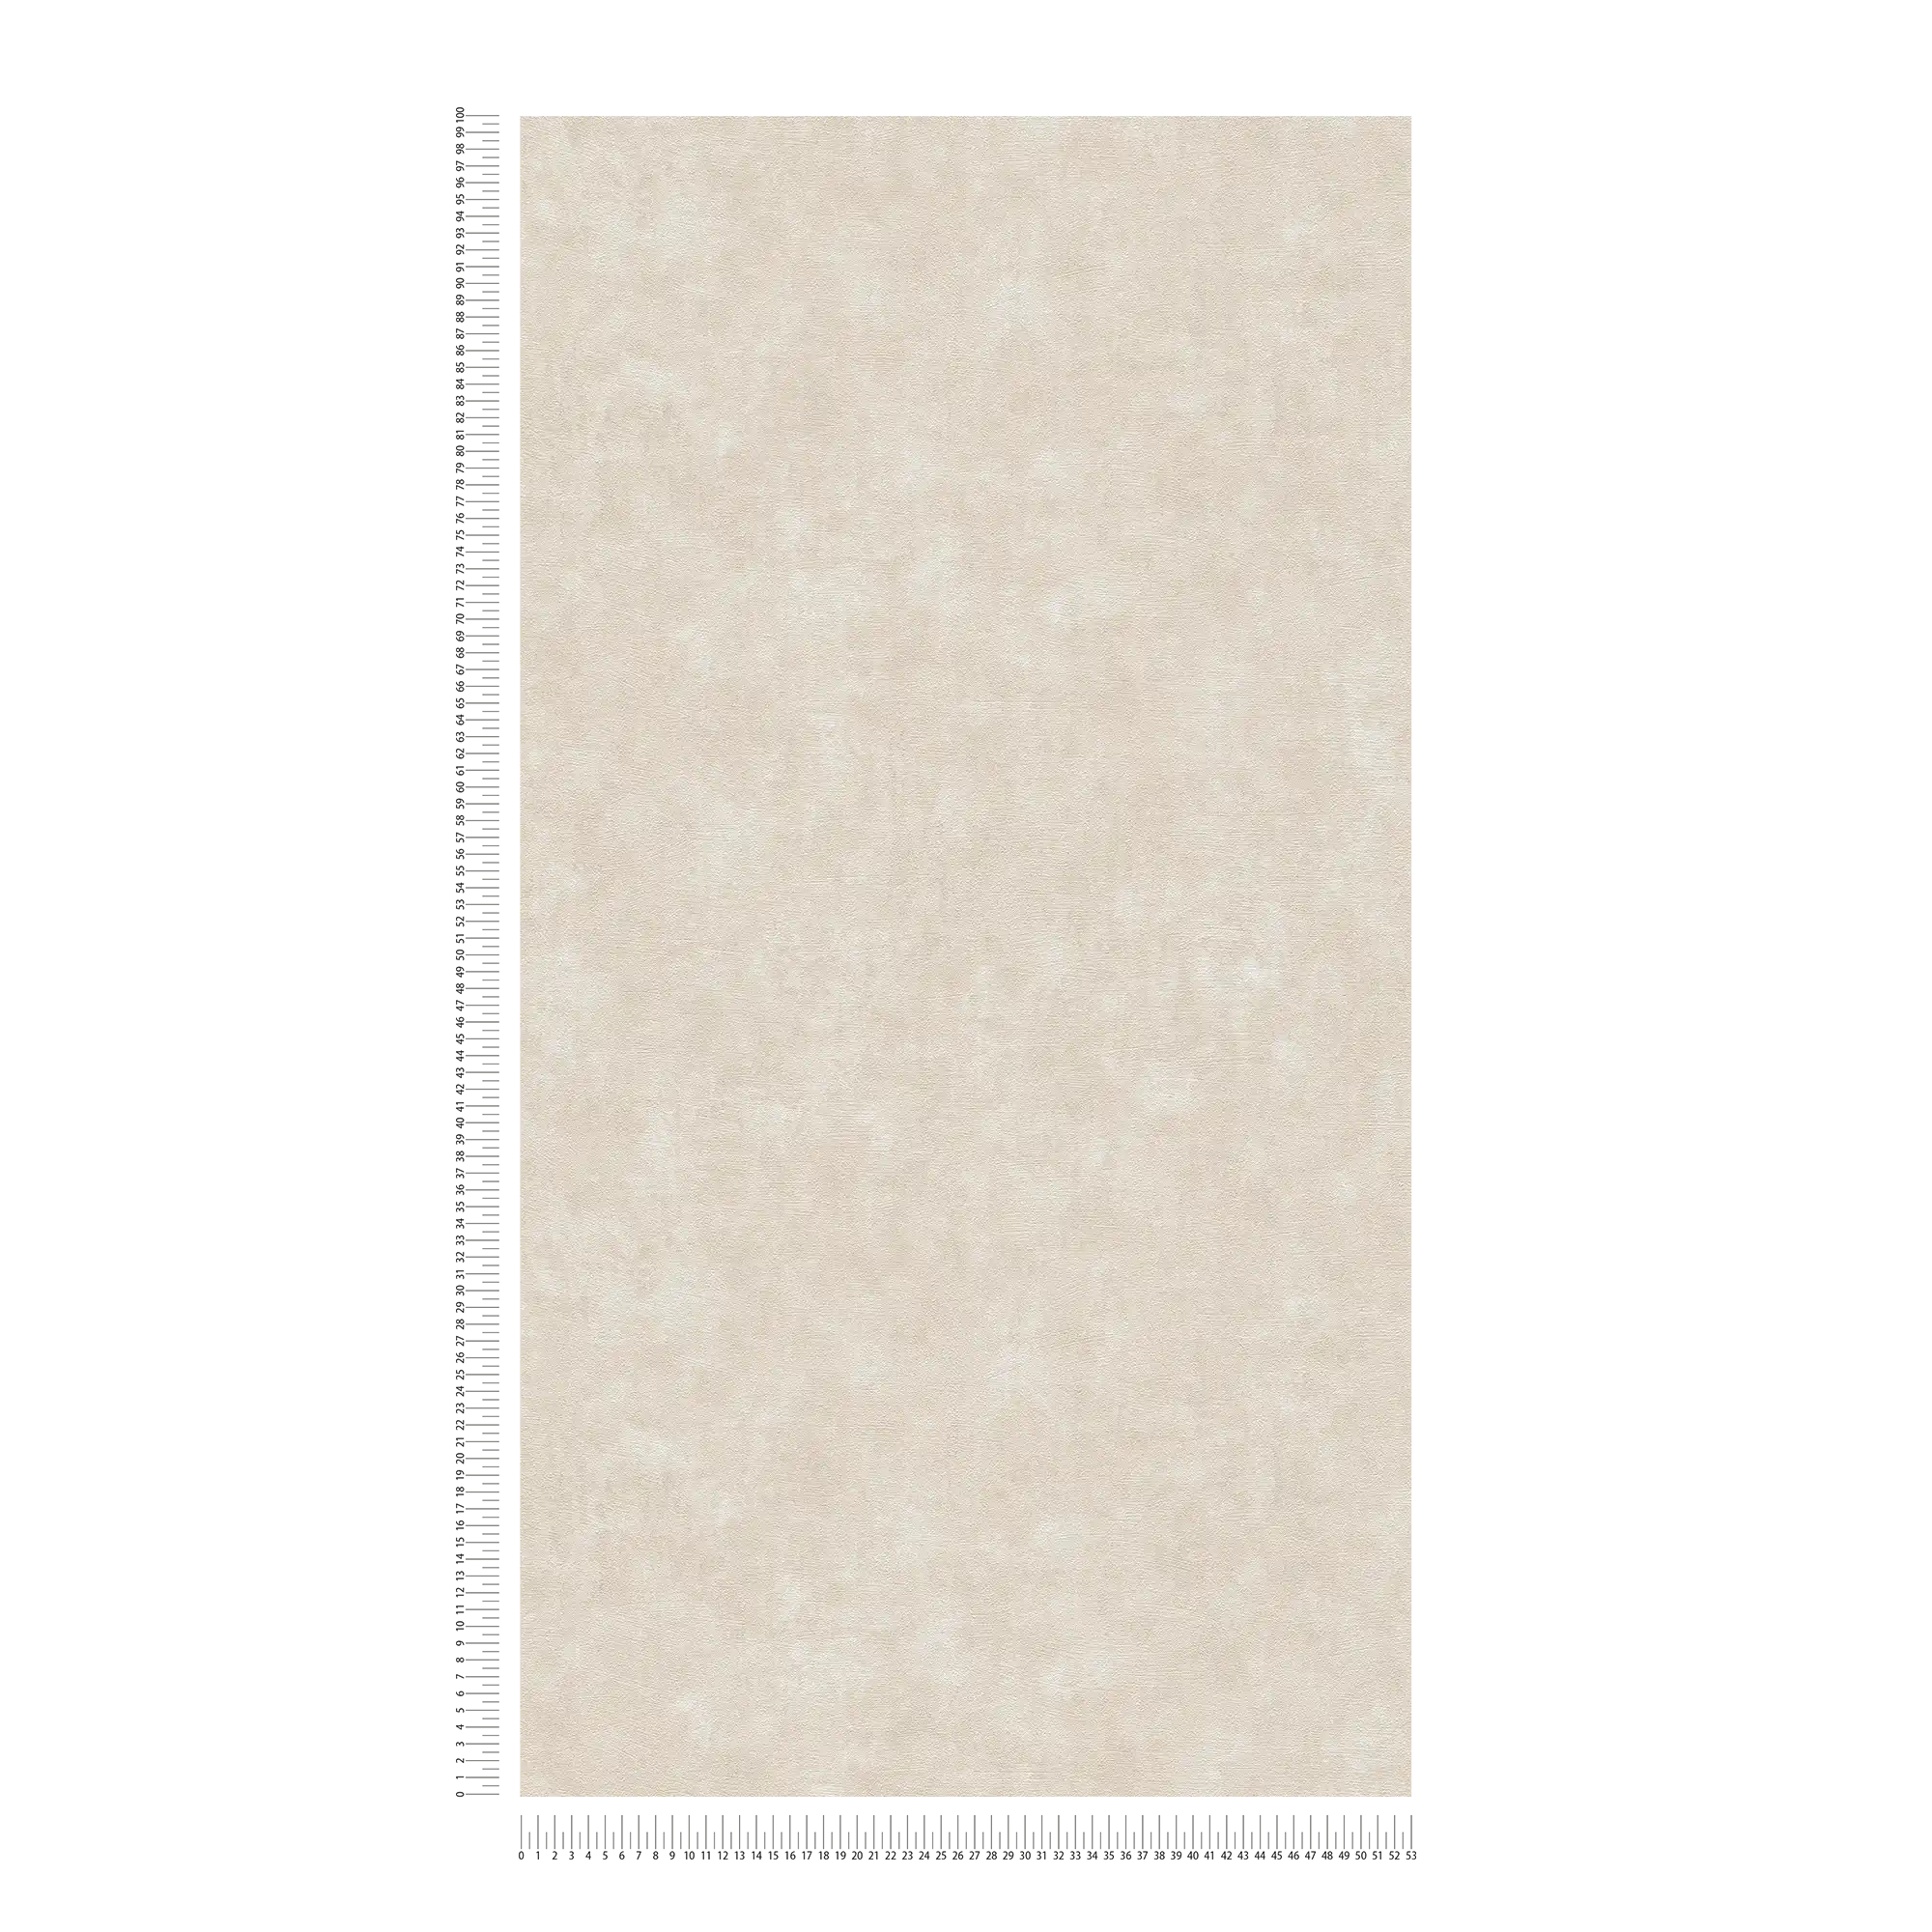             Carta da parati in tessuto non tessuto con aspetto e struttura in cemento - crema, grigio
        